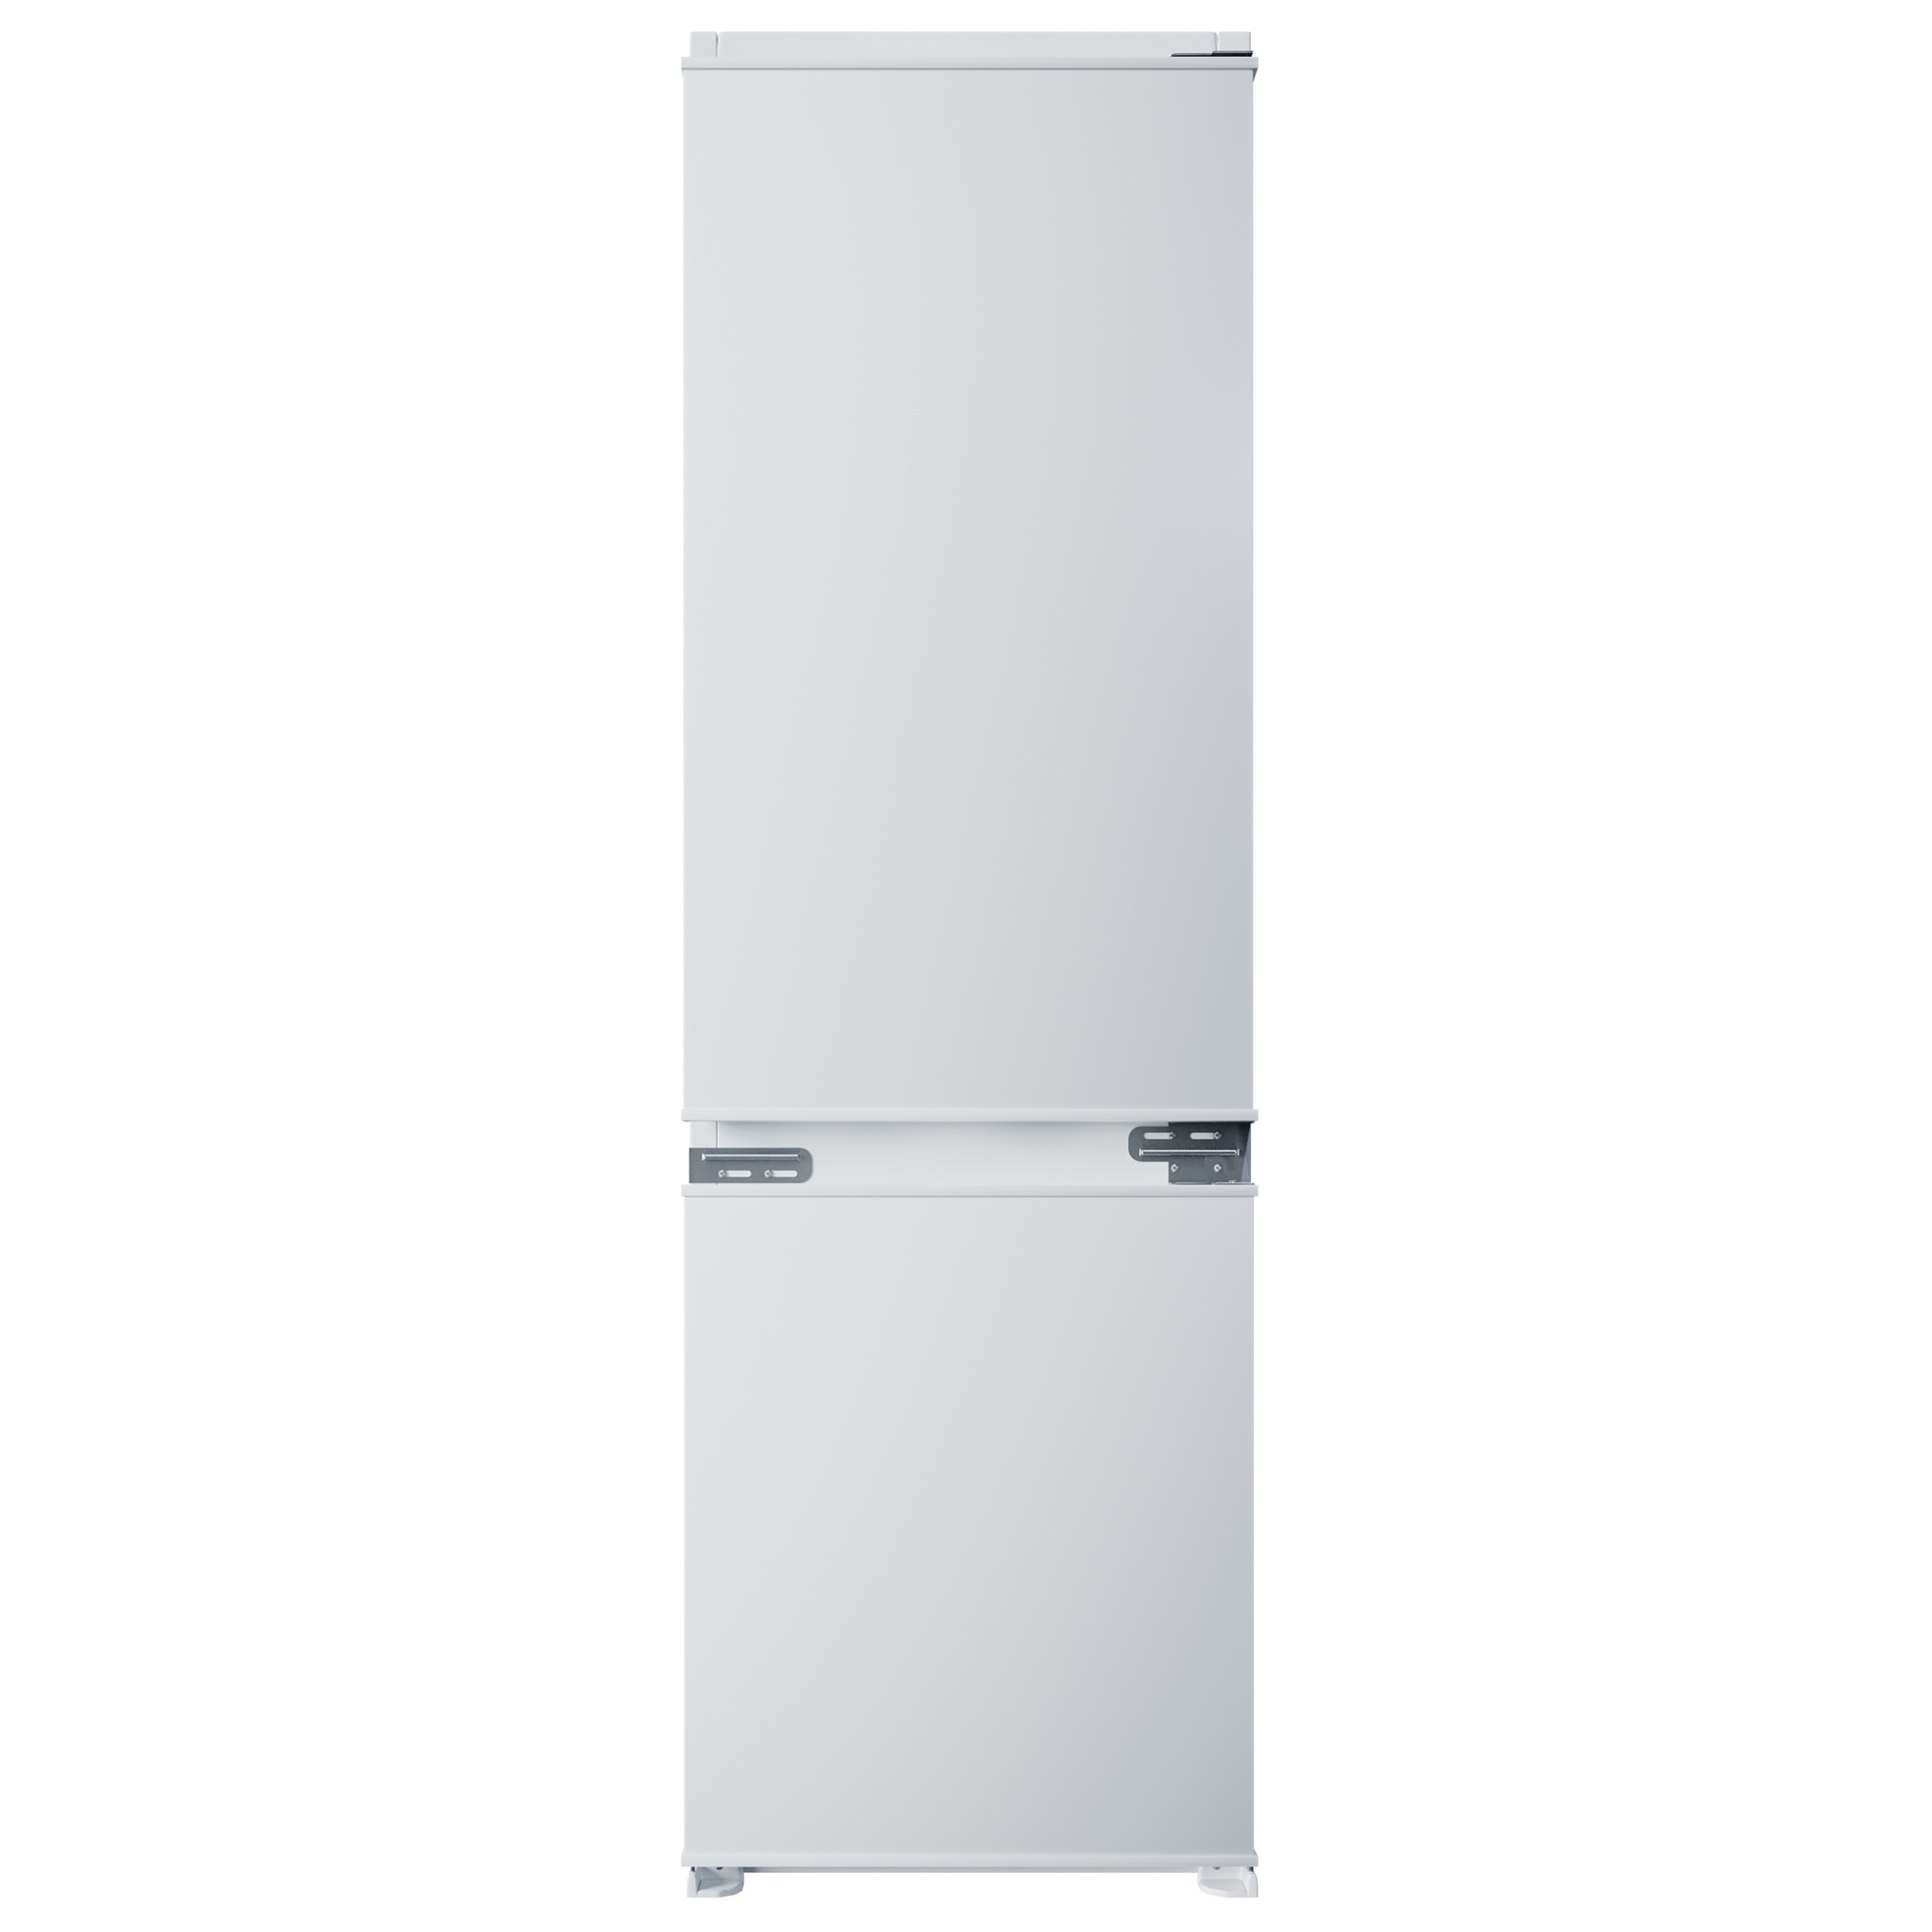 Встраиваемый холодильник Krona BALFRIN KRFR 101 белый встраиваемый холодильник krona balfrin krfr 101 белый